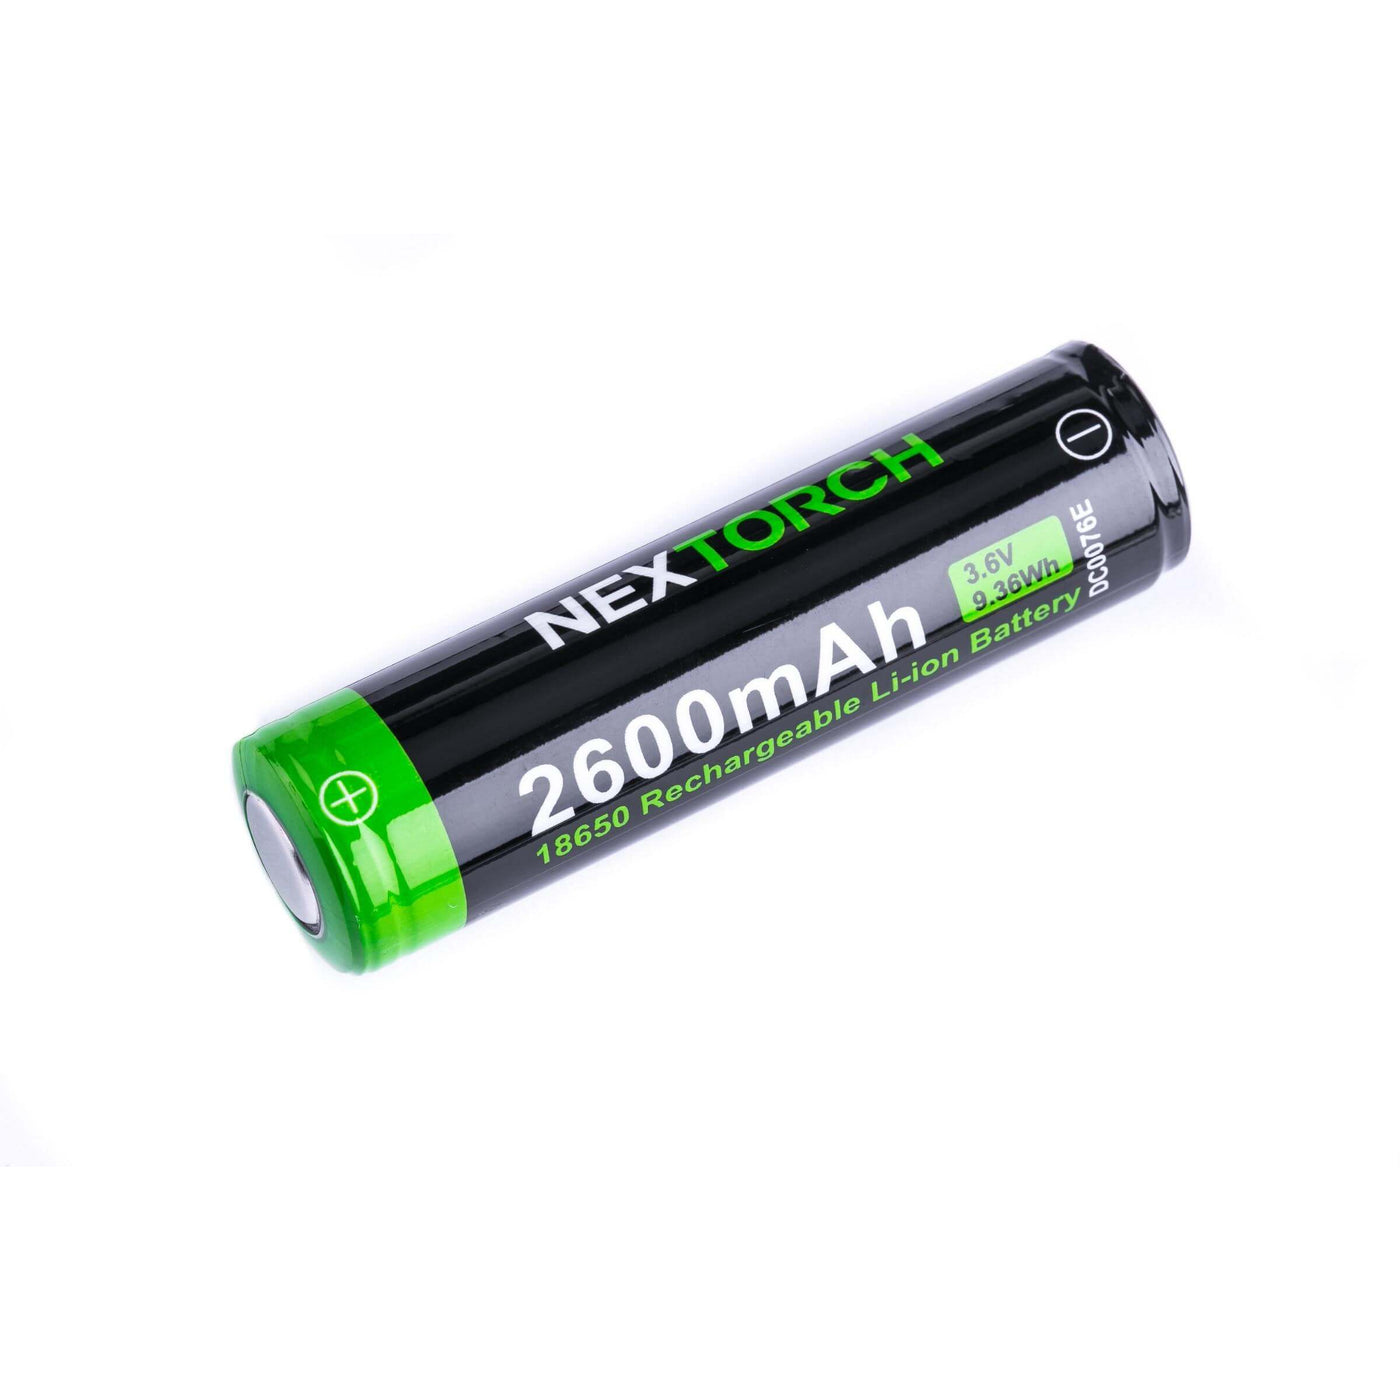 Batterie Li-ion rechargeable DC0076E 2600 mAh